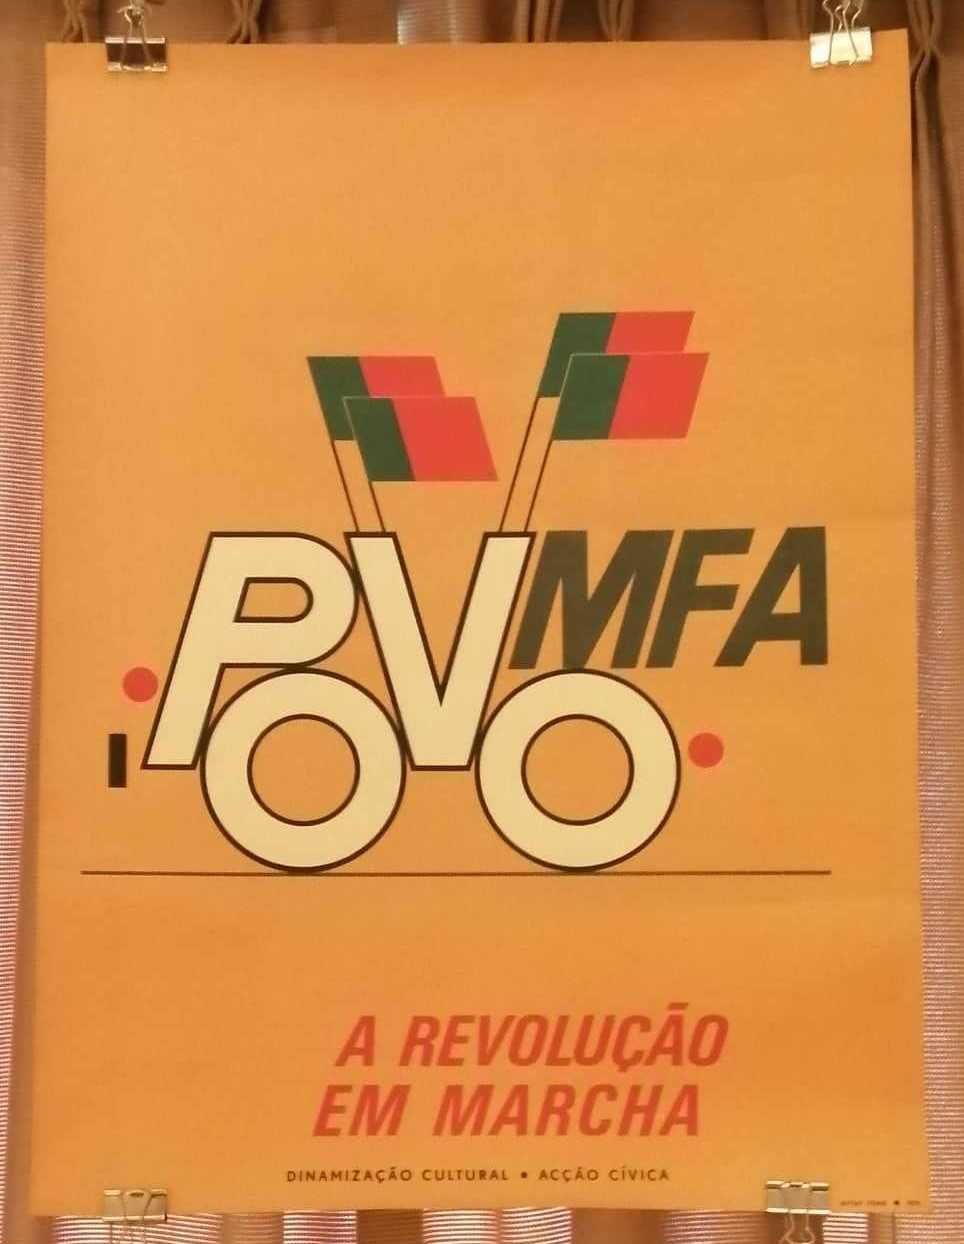 Cartaz original Povo MFA de Artur Rosa Revolução 25 de Abril de 1974